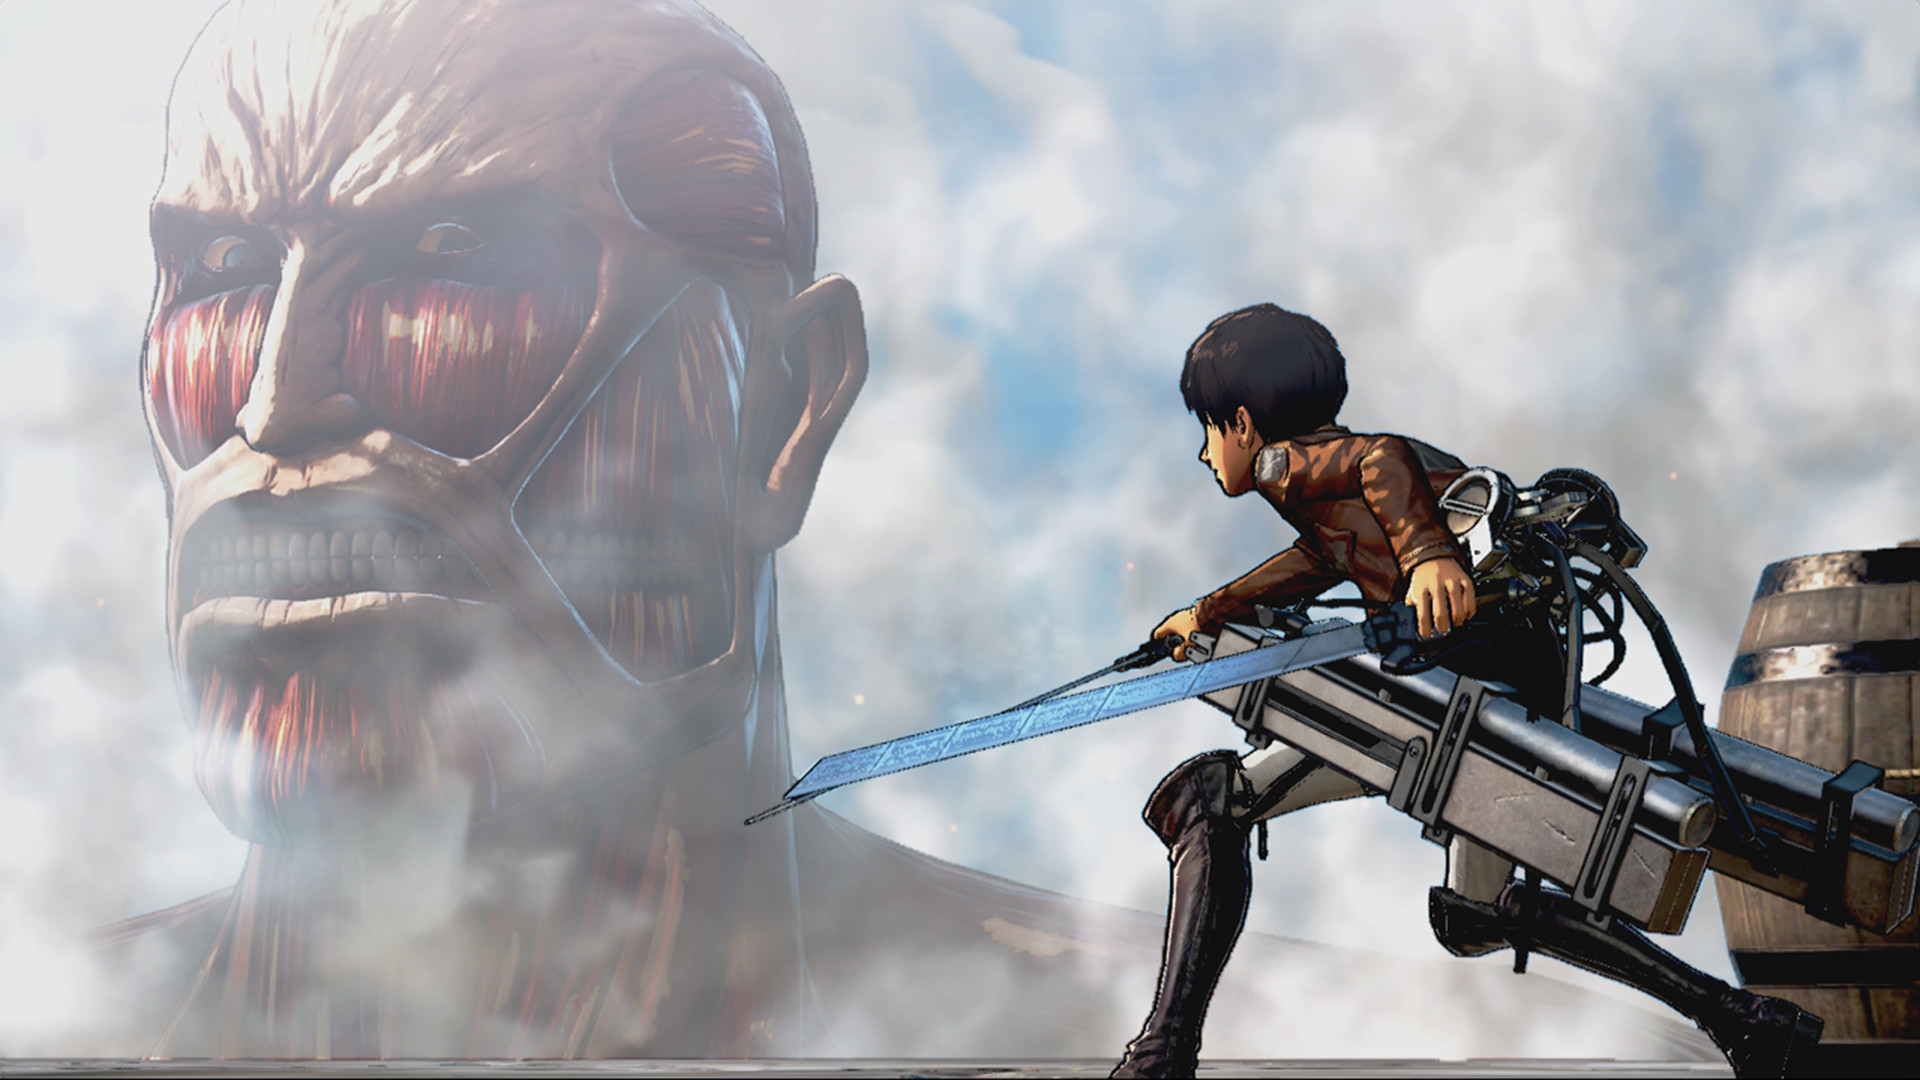 Най -добри аниме игри: Атака на Титан. Изображението показва титан, който гледа някого и изглежда гладен